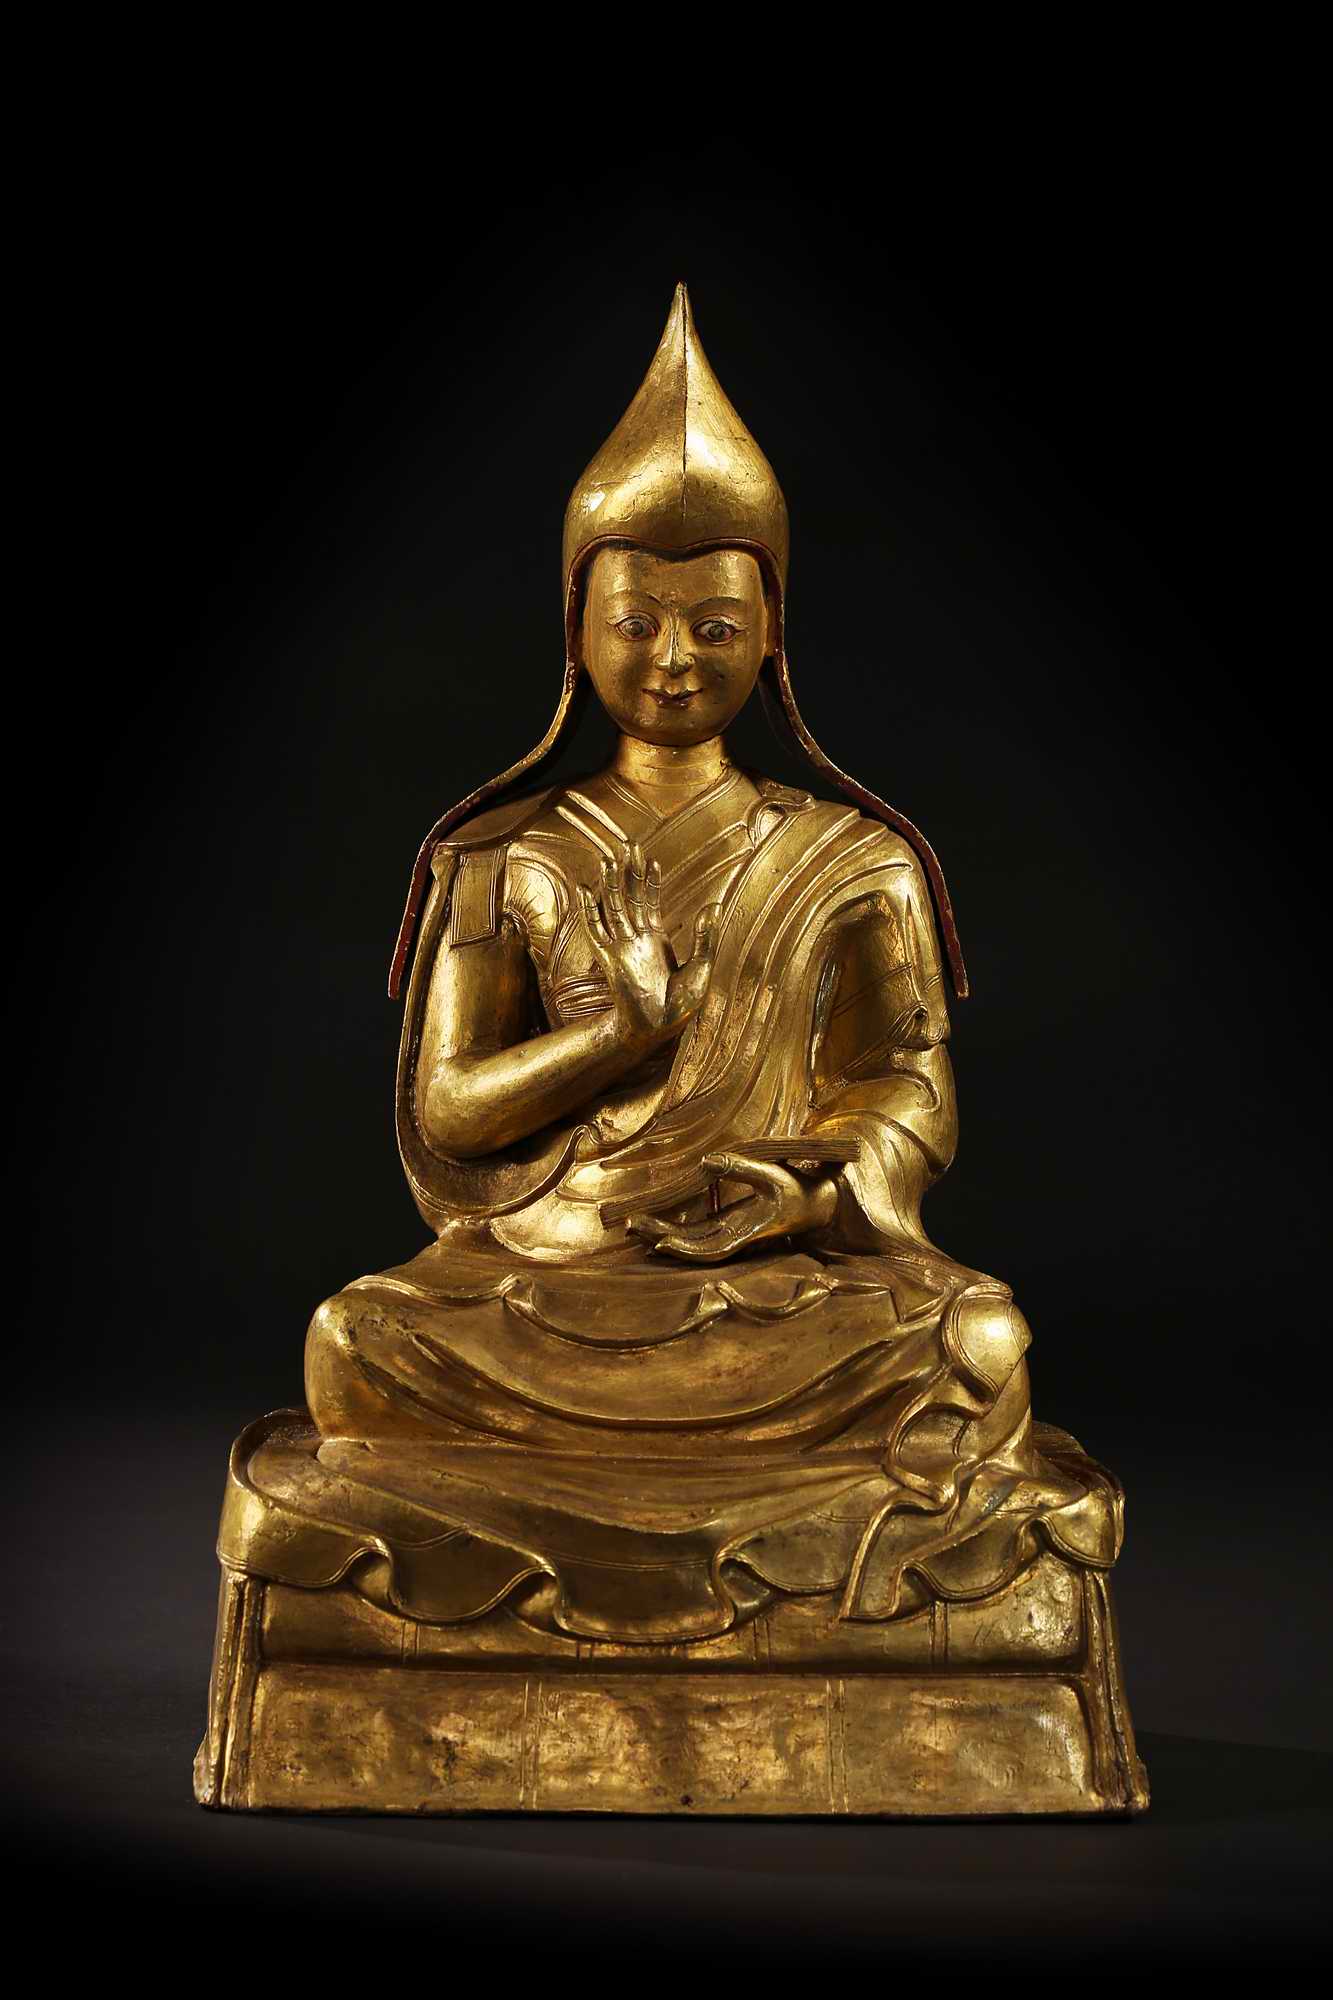 装裱形式：西藏 17-18世纪班禅